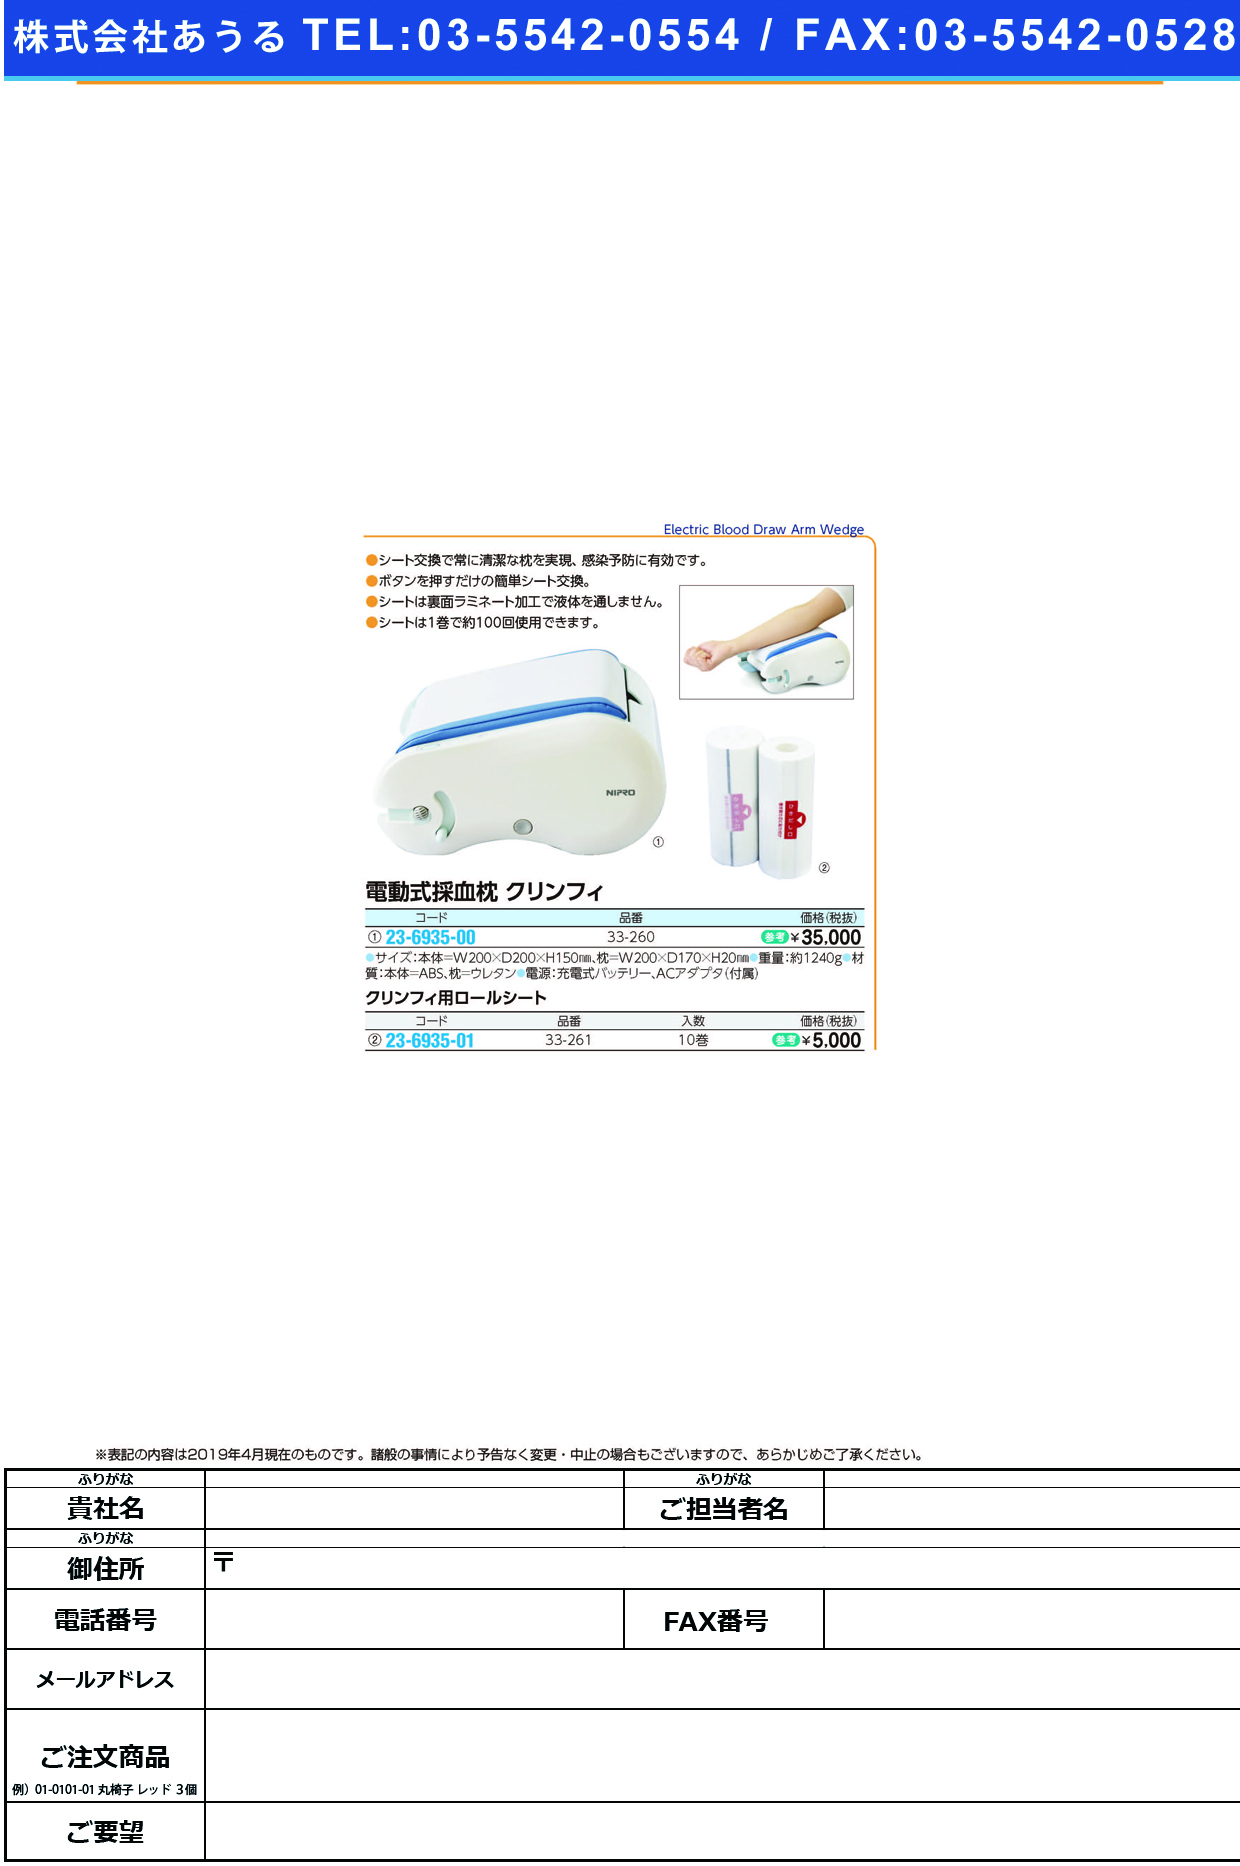 (23-6935-00)電動式採血枕クリンフィ 33-260 ﾃﾞﾝﾄﾞｳｼｷｻｲｹﾂﾏｸﾗｸﾘﾝﾌｨ(ニプロ)【1台単位】【2019年カタログ商品】